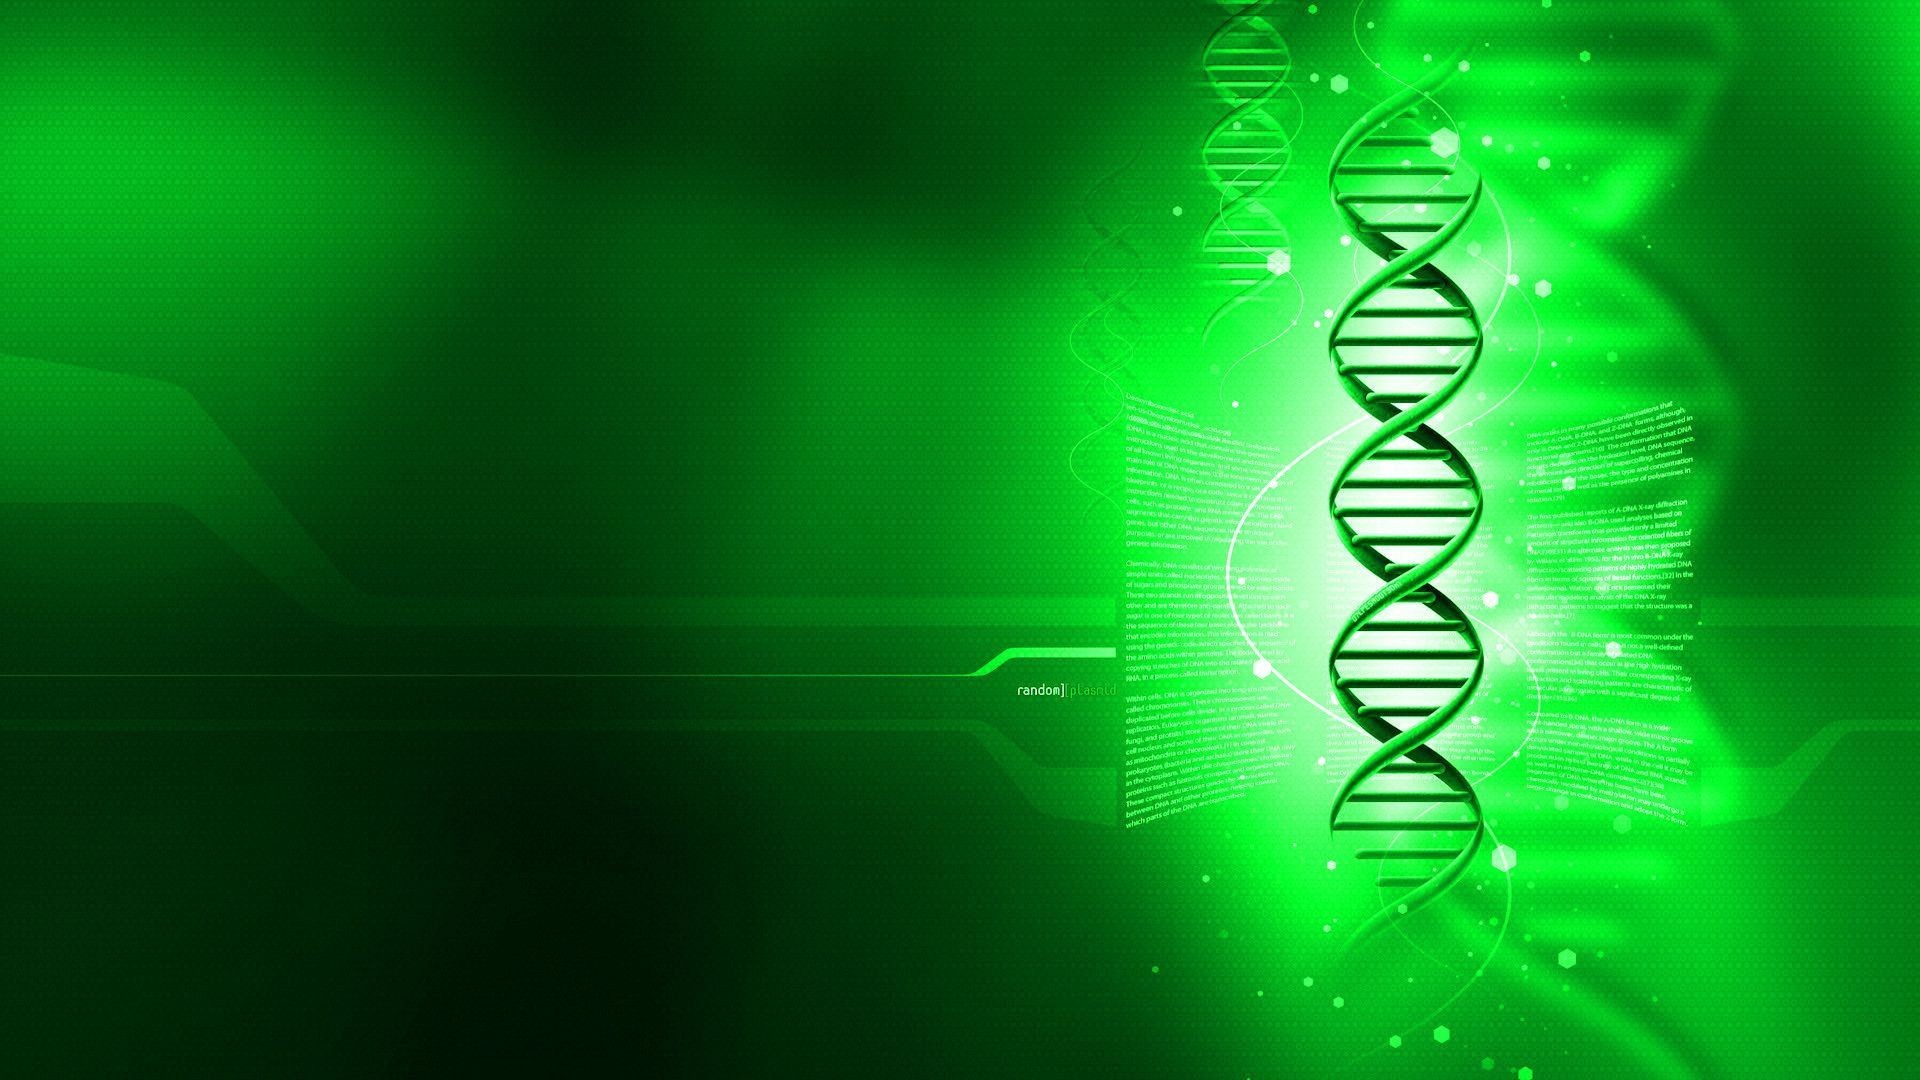 biologia wallpaper hd,verde,leggero,tecnologia,disegno grafico,grafica